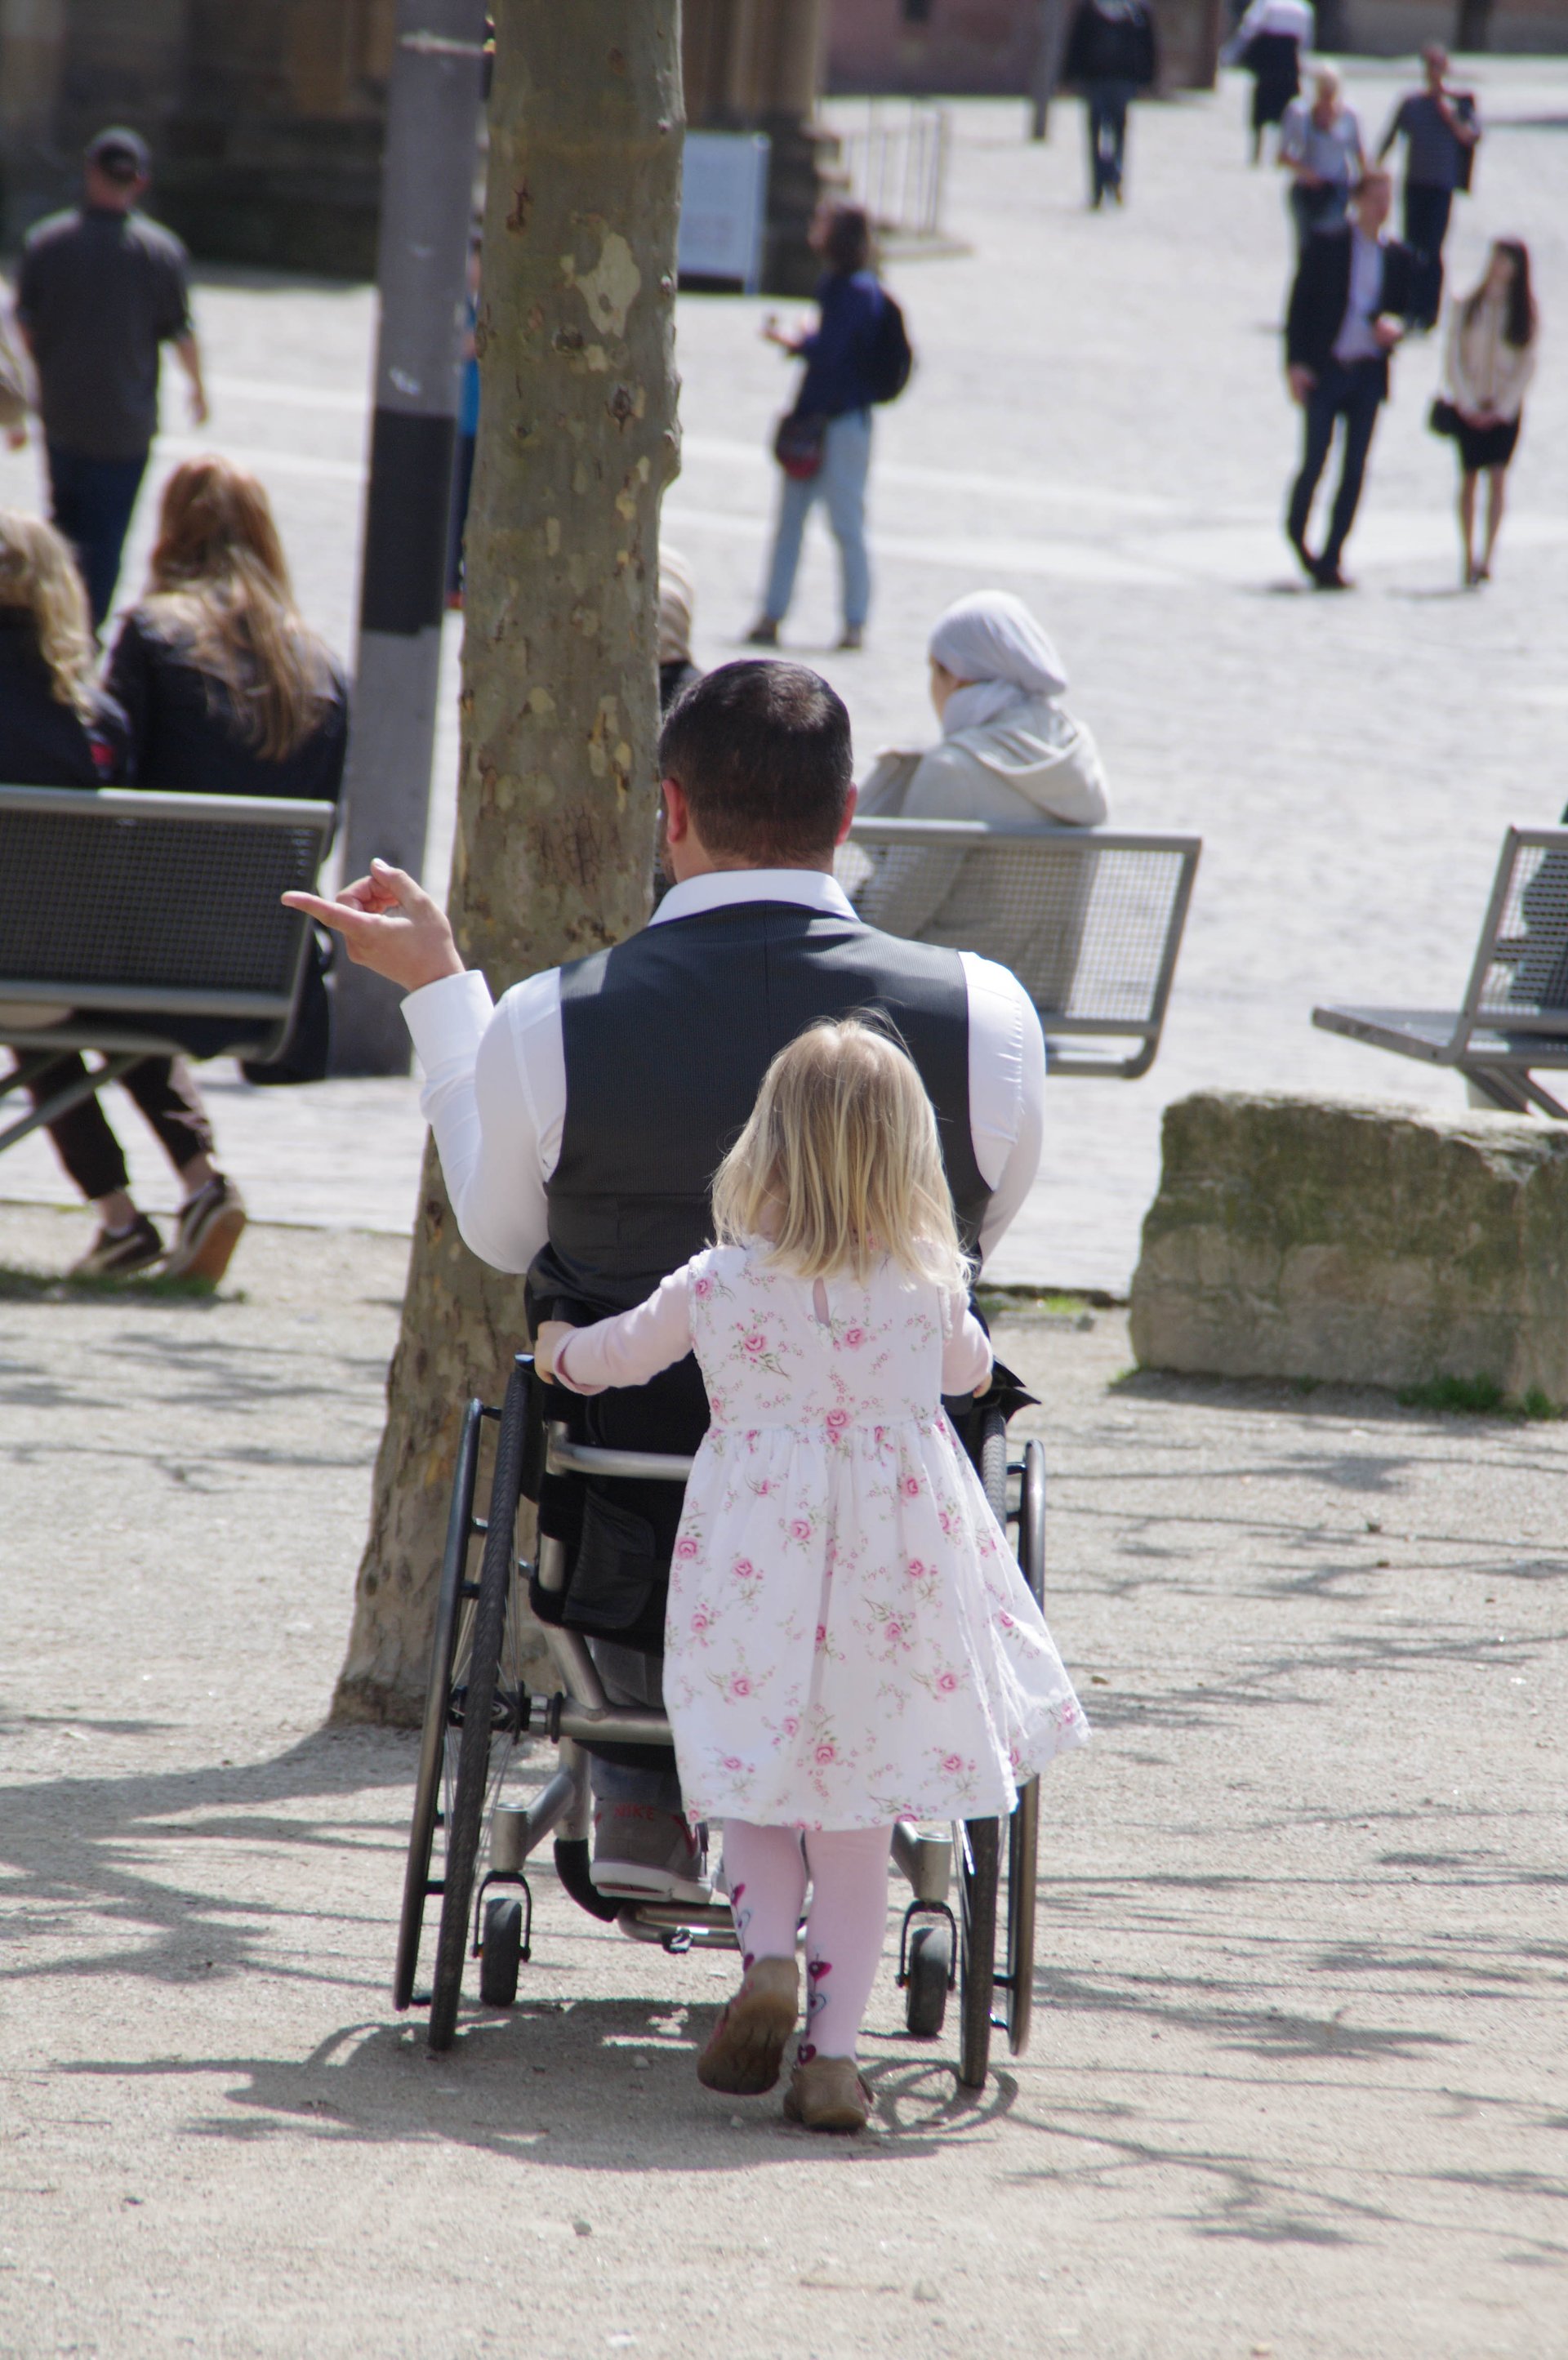 Ein kleines Mädchen in einem geblümten Kleid schiebt einen Mann im Rollstuhl auf einem öffentlichen Platz in Richtung eines Baumes. Der Mann zeigt mit einem Finger nach Links, um die Richtung anzugeben, in die das Mädchen ihn schieben soll. (Foto: Architektos)